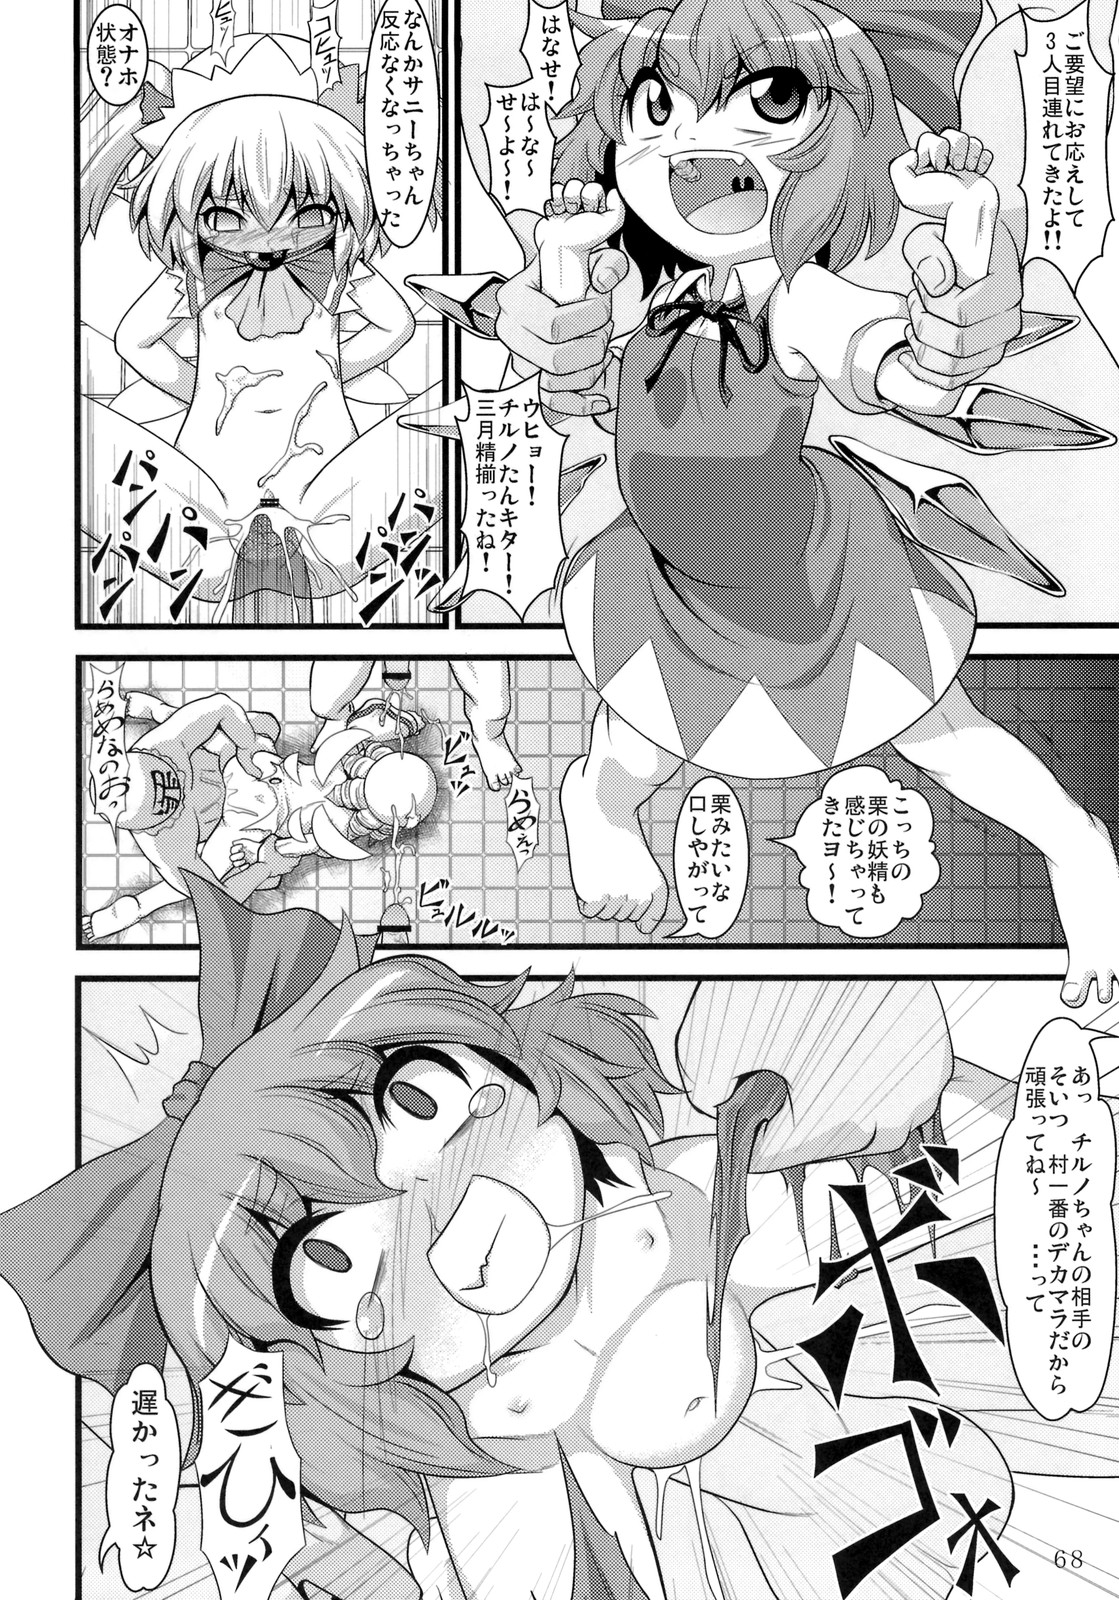 (例大祭8) [ToHoMiLK制作委員会] コミック トウホウミルク 20011年3月号 (東方Project)